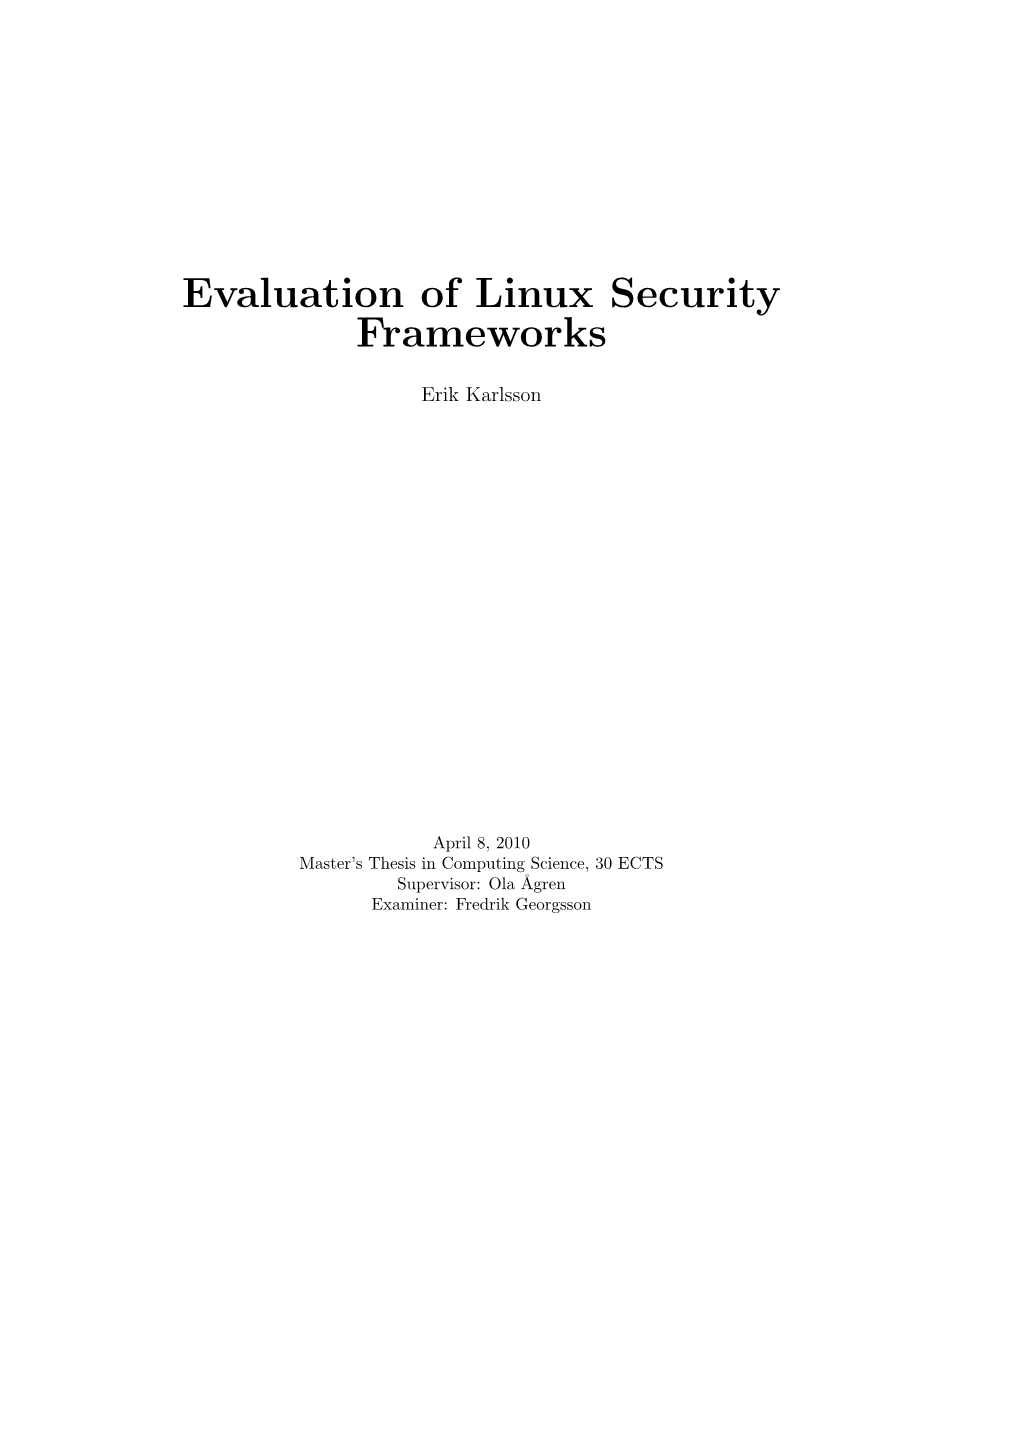 Evaluation of Linux Security Frameworks